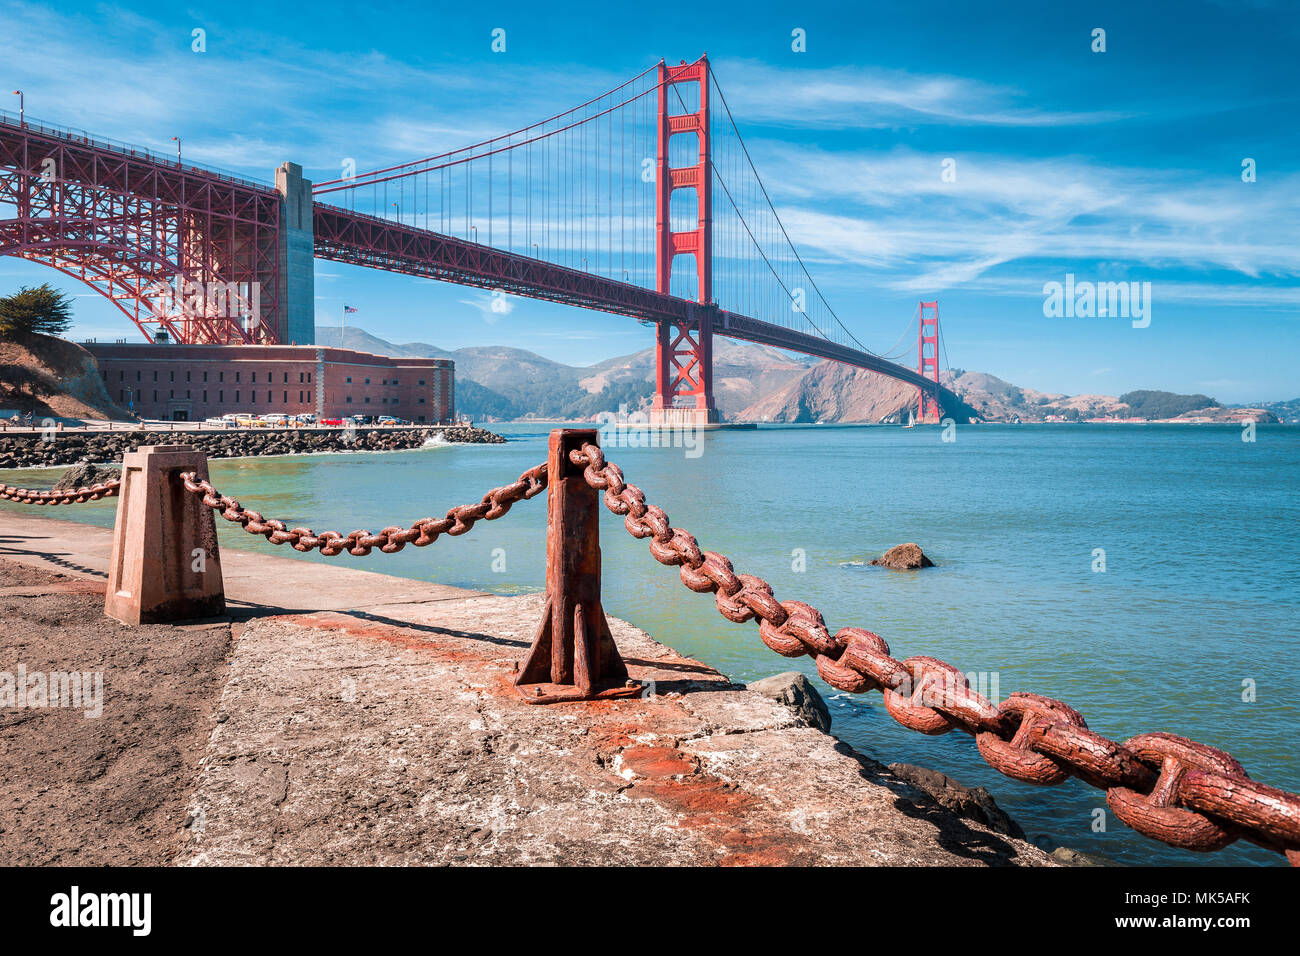 La vue classique du célèbre Golden Gate Bridge avec Fort Point National Historic Site sur une belle journée ensoleillée avec ciel bleu et nuages, San Francisco, États-Unis Banque D'Images